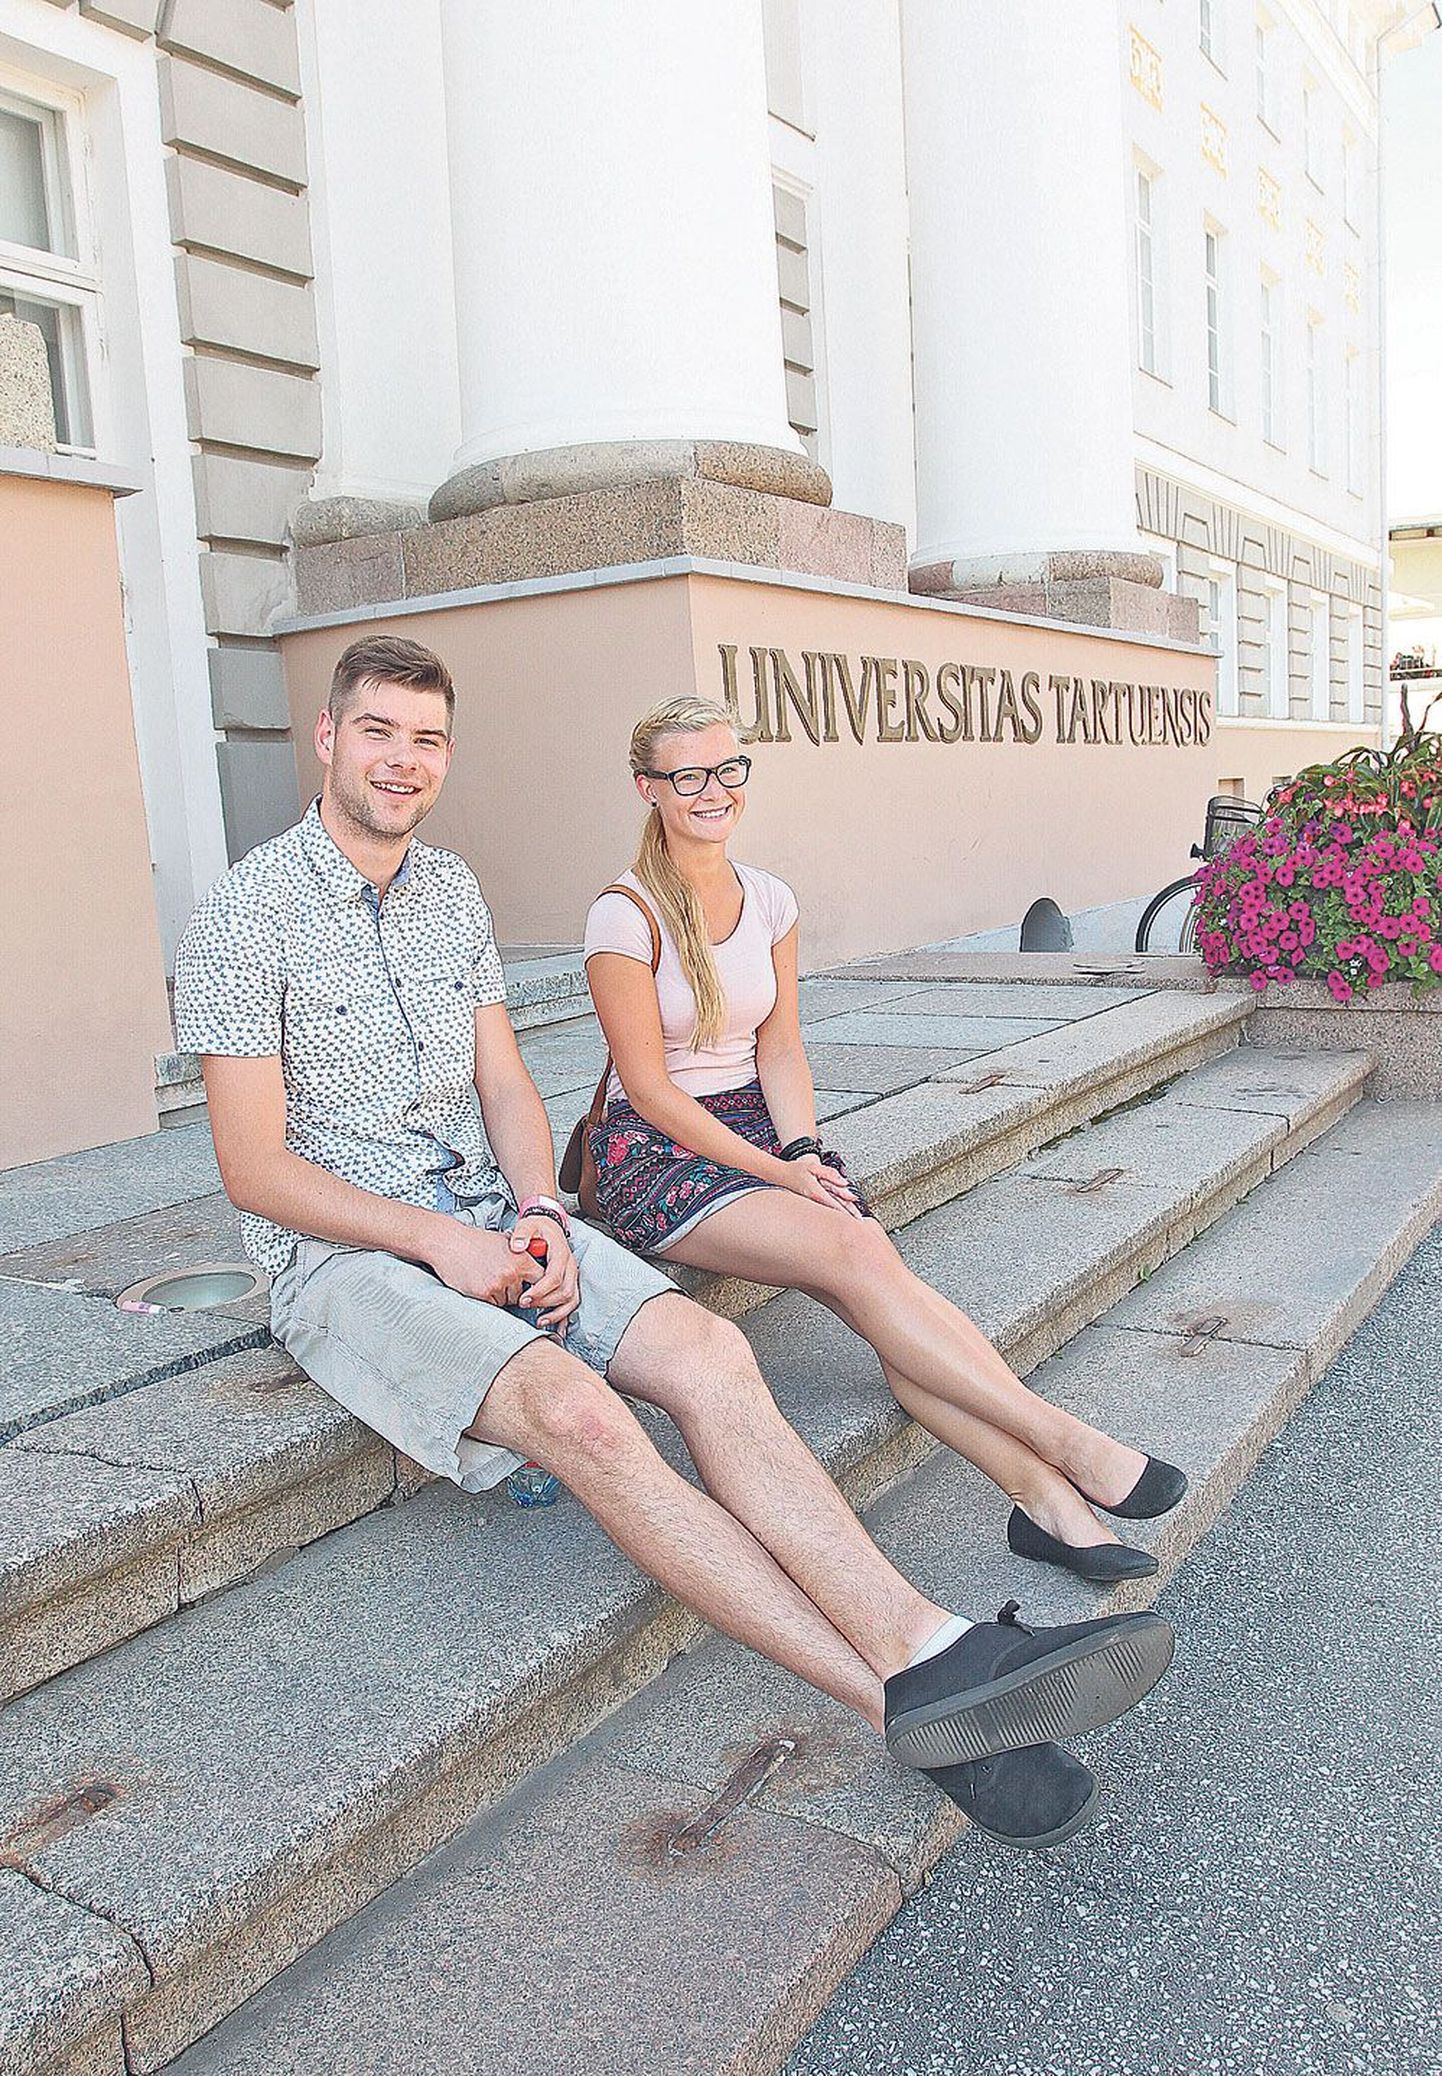 Pärnu Ülejõe gümnaasiumi lõpetanud Kristen Taavi Ilves ja Anett Padul andsid sisseastumisavalduse sisse ka pealinna ülikoolidesse, kuid kinnitasid, et esimene valik on siiski Tartu ülikool.